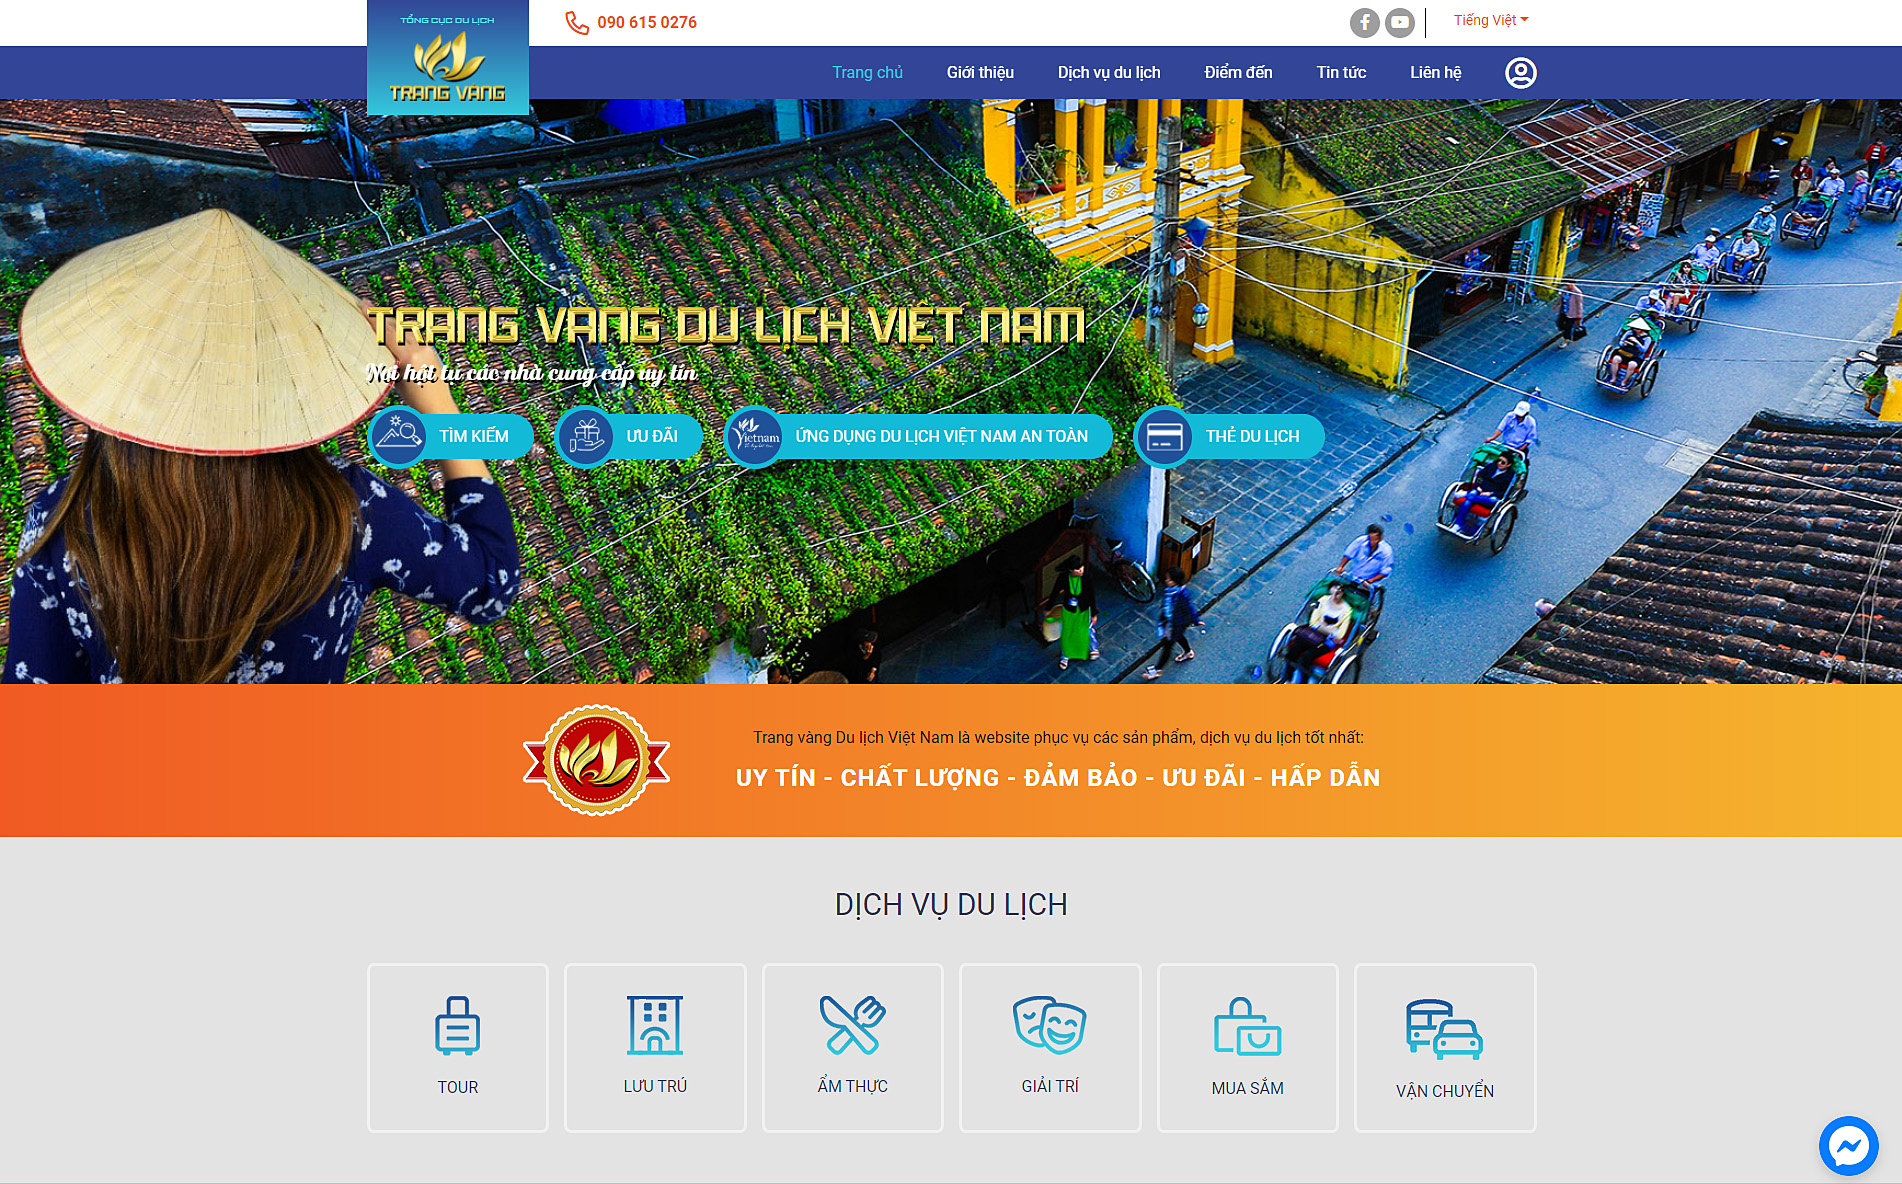 “Trang vàng du lịch Việt Nam”: Nền tảng kết nối uy tín giữa nhà cung cấp dịch vụ du lịch và khách hàng